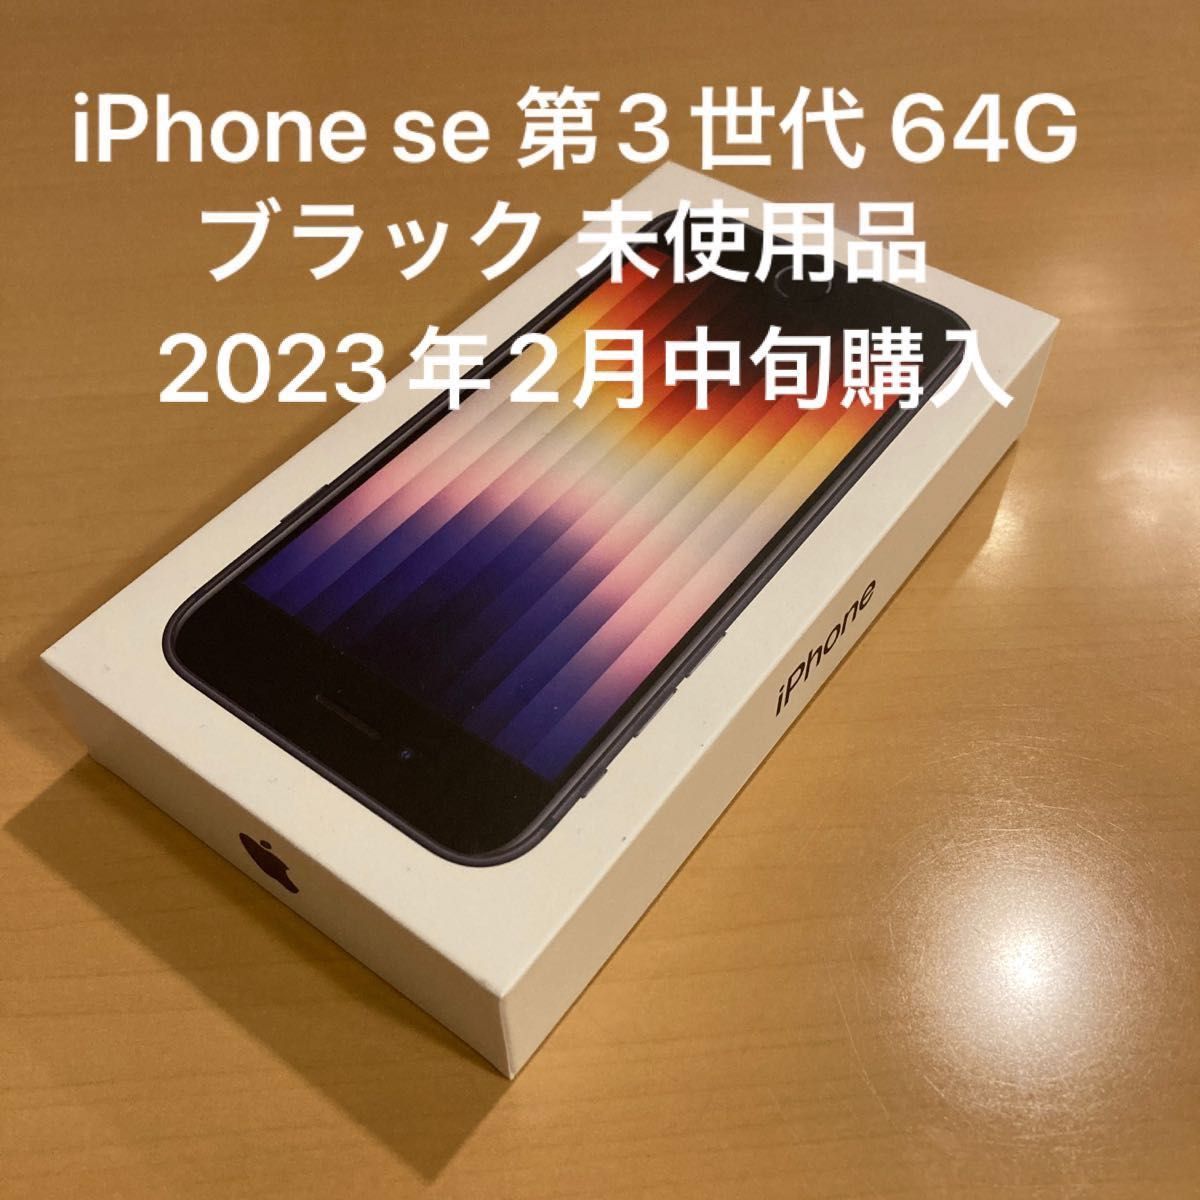 SiMフリー 残債なし】 iPhone SE 第3世代 ミッドナイト ブラック 64GB